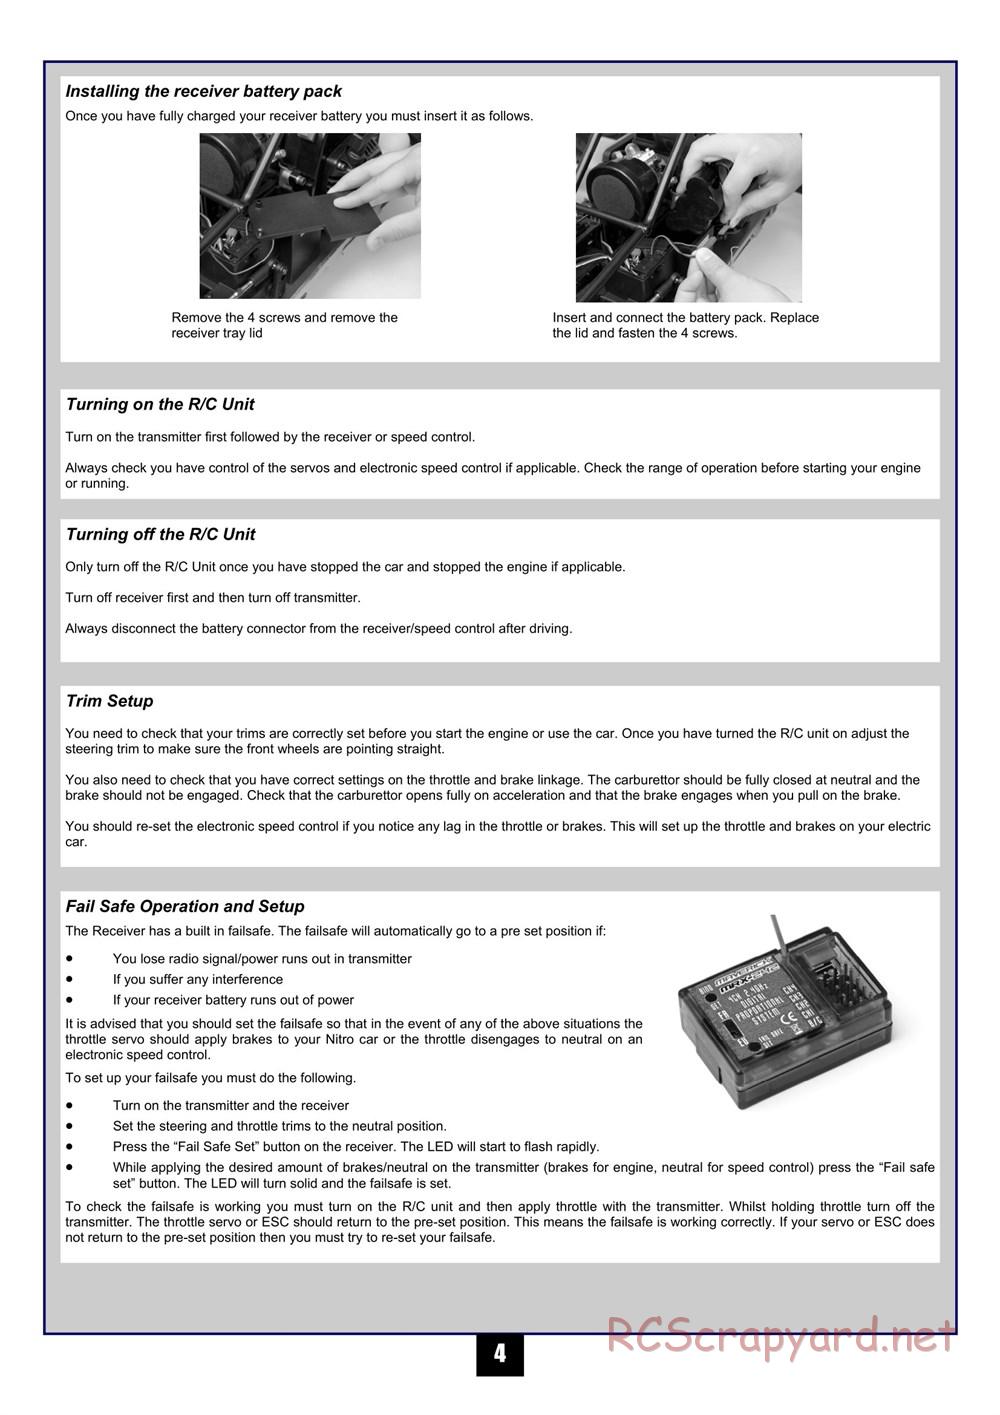 HPI - Maverick Blackout MT - Manual - Page 5